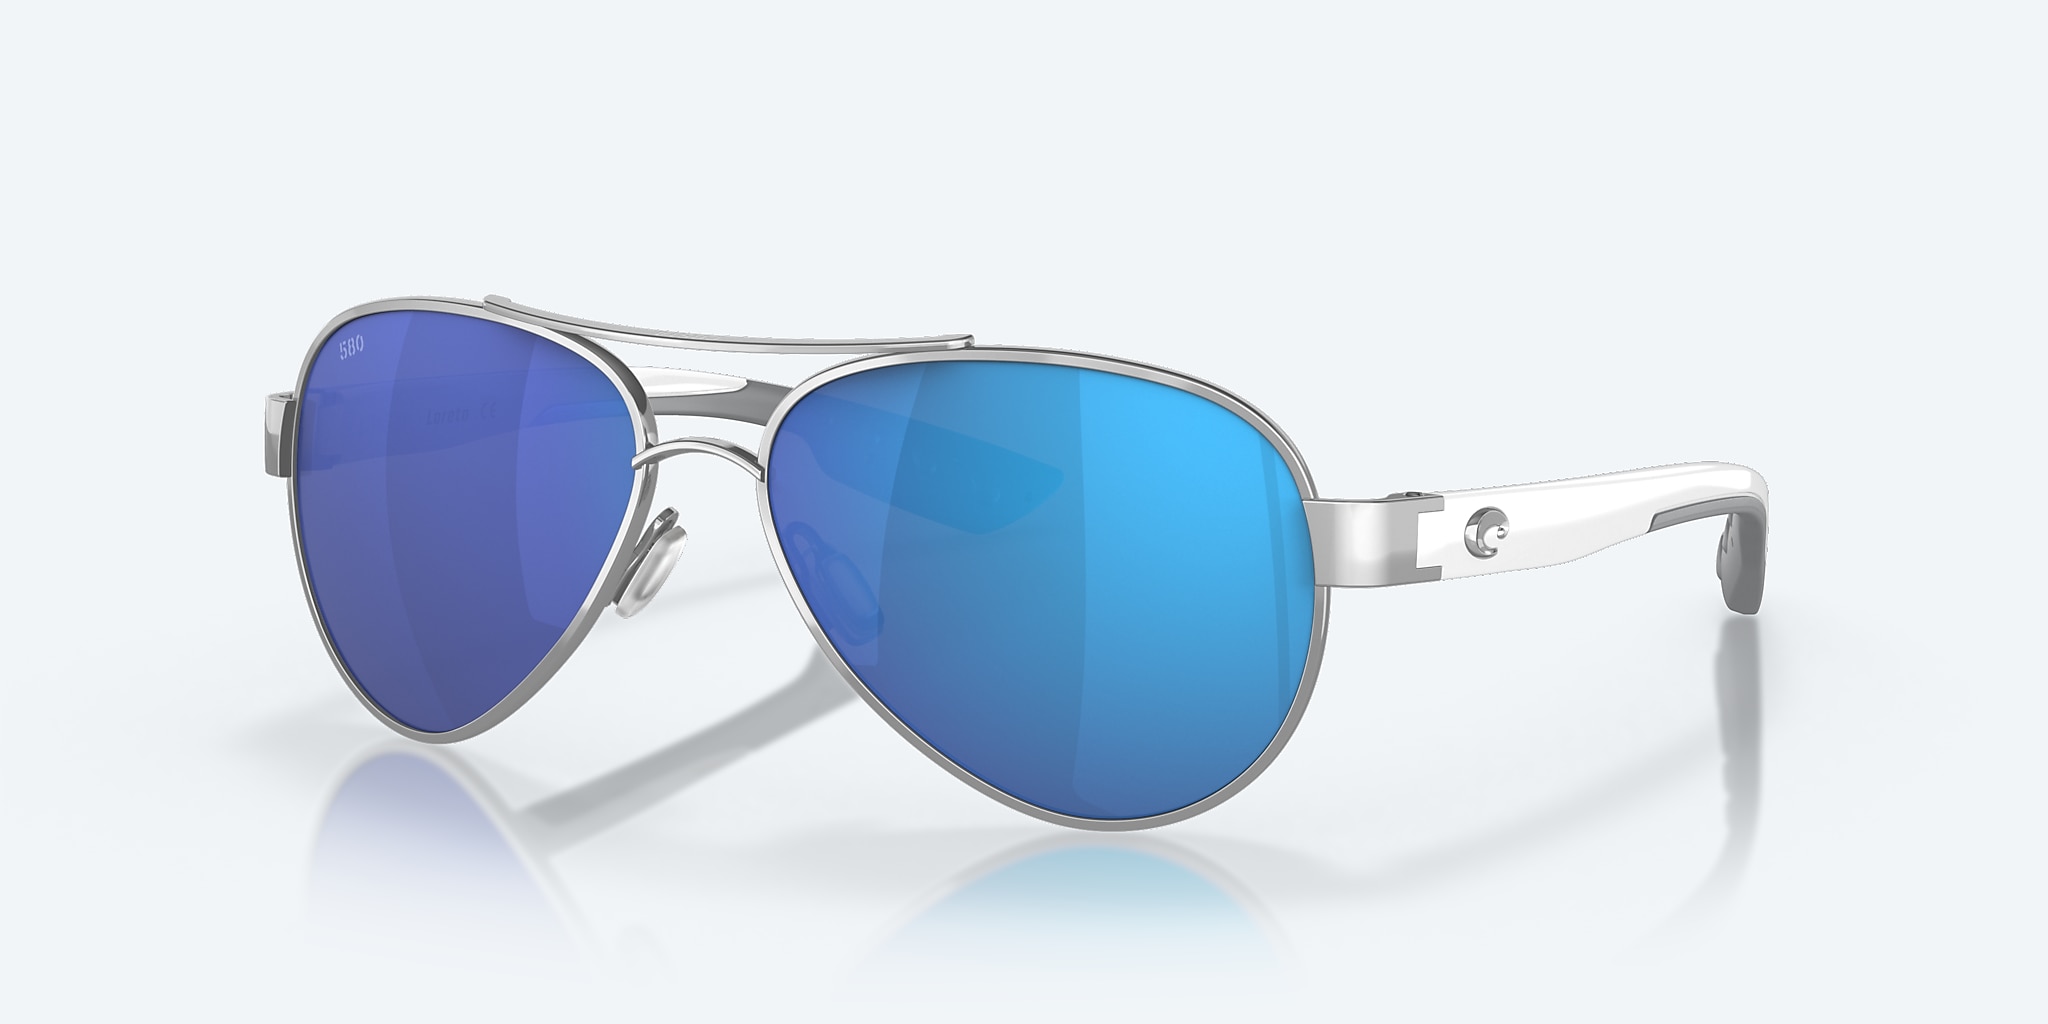 Loreto Polarized Sunglasses in Blue Mirror